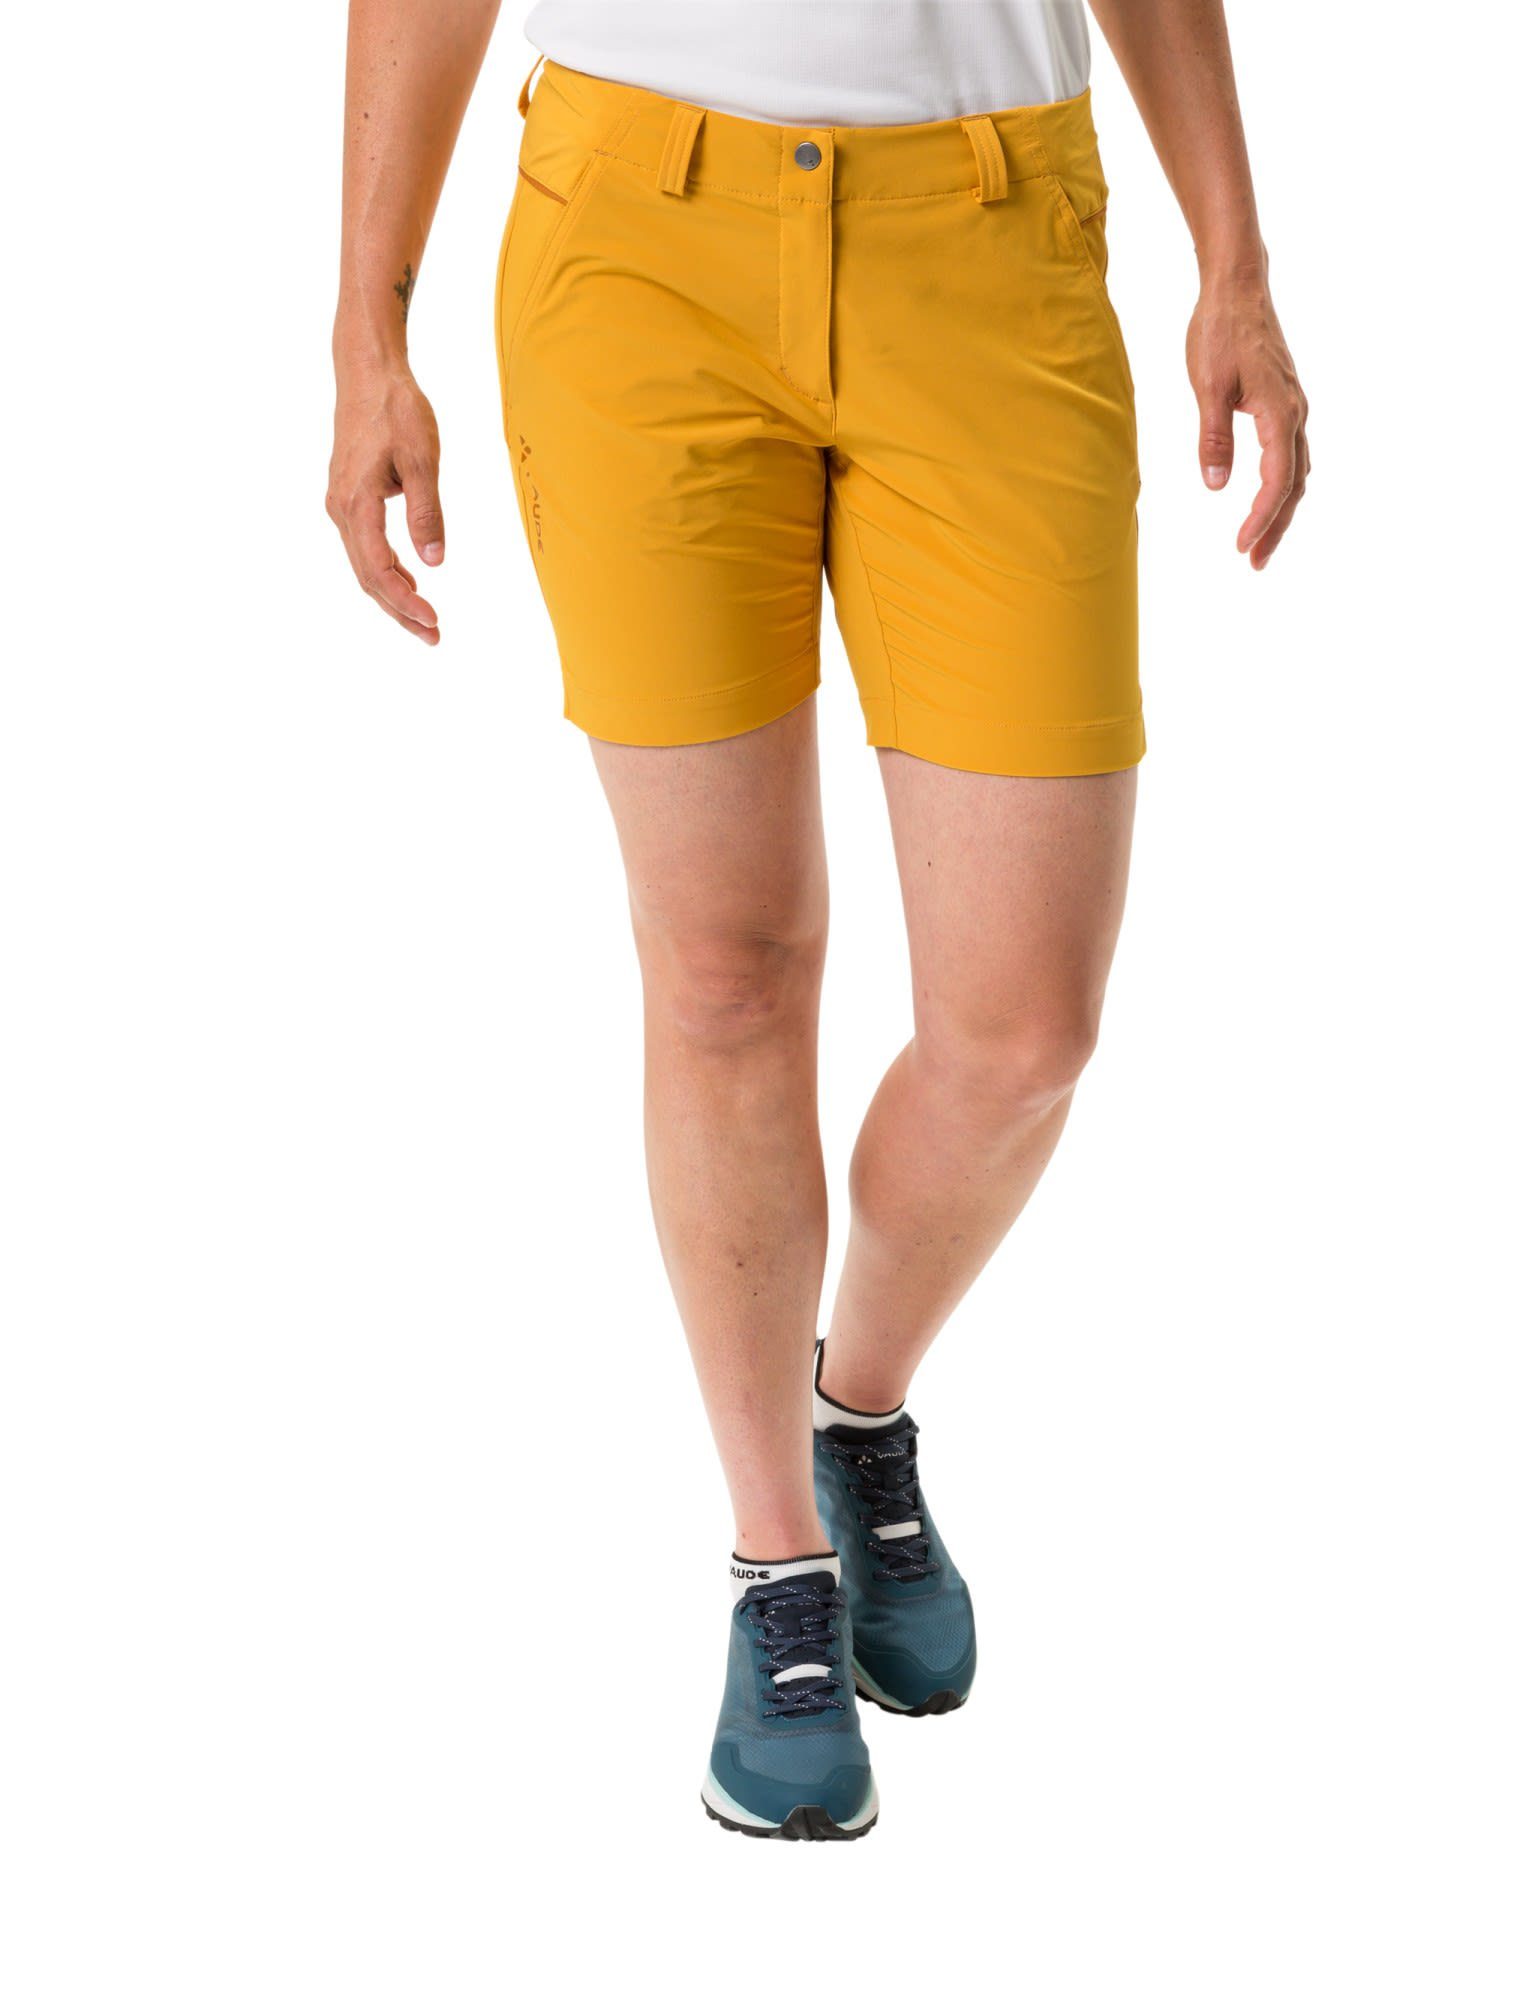 VAUDE Strandshorts Vaude Womens Yellow Skomer Shorts Shorts Damen Iii Burnt